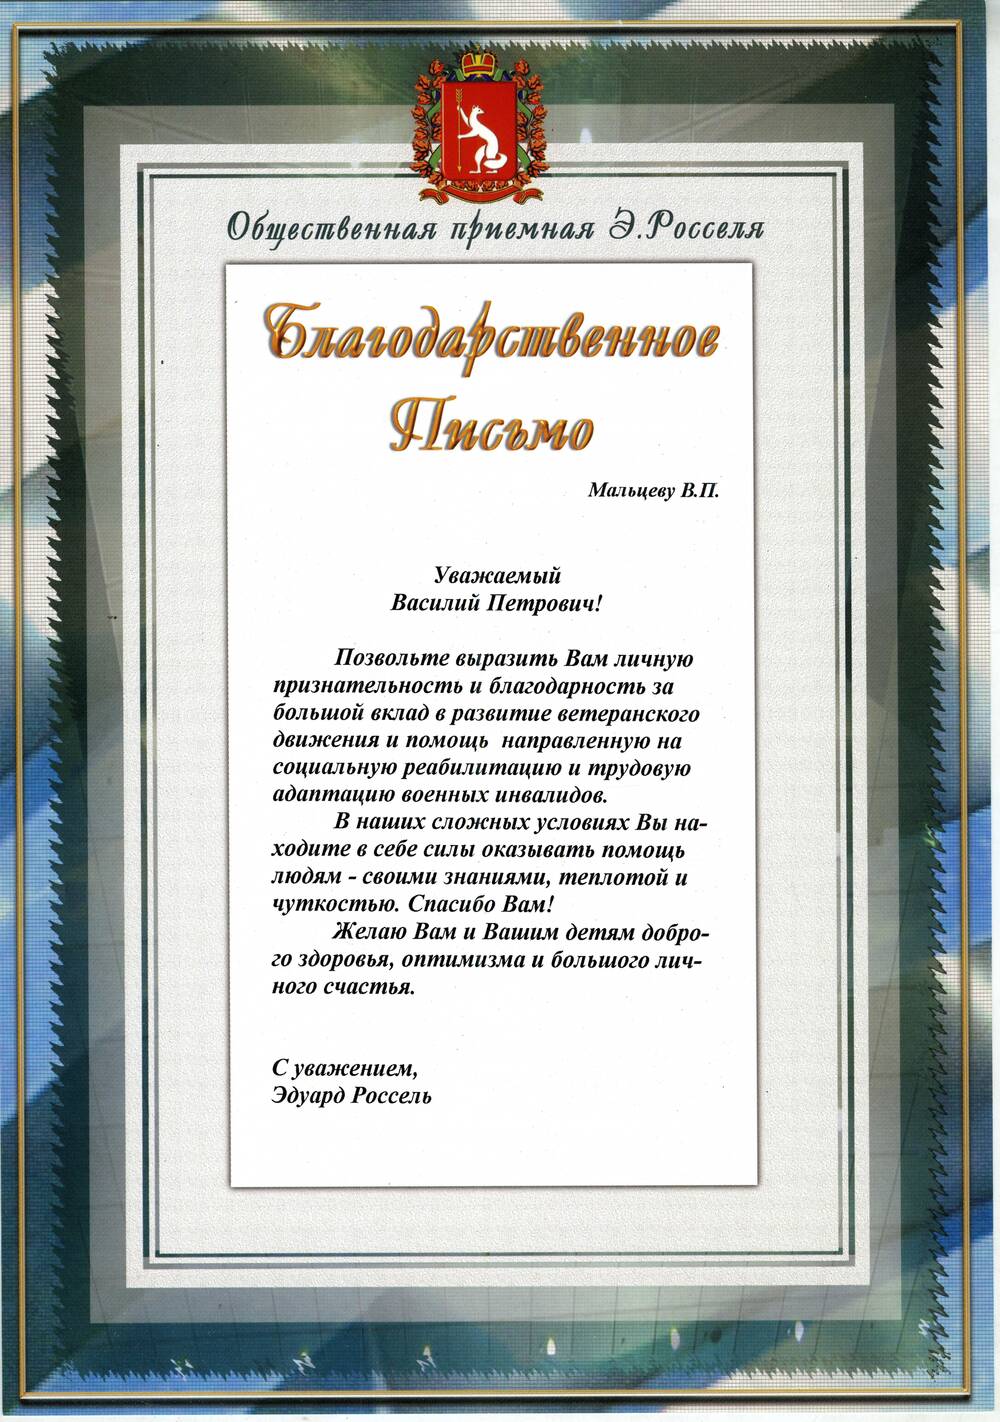 Письмо благодарственное Мальцеву В.П. от Эдуарда Росселя - губернатора Свердловской области, г. Екатеринбург, 1990 гг.